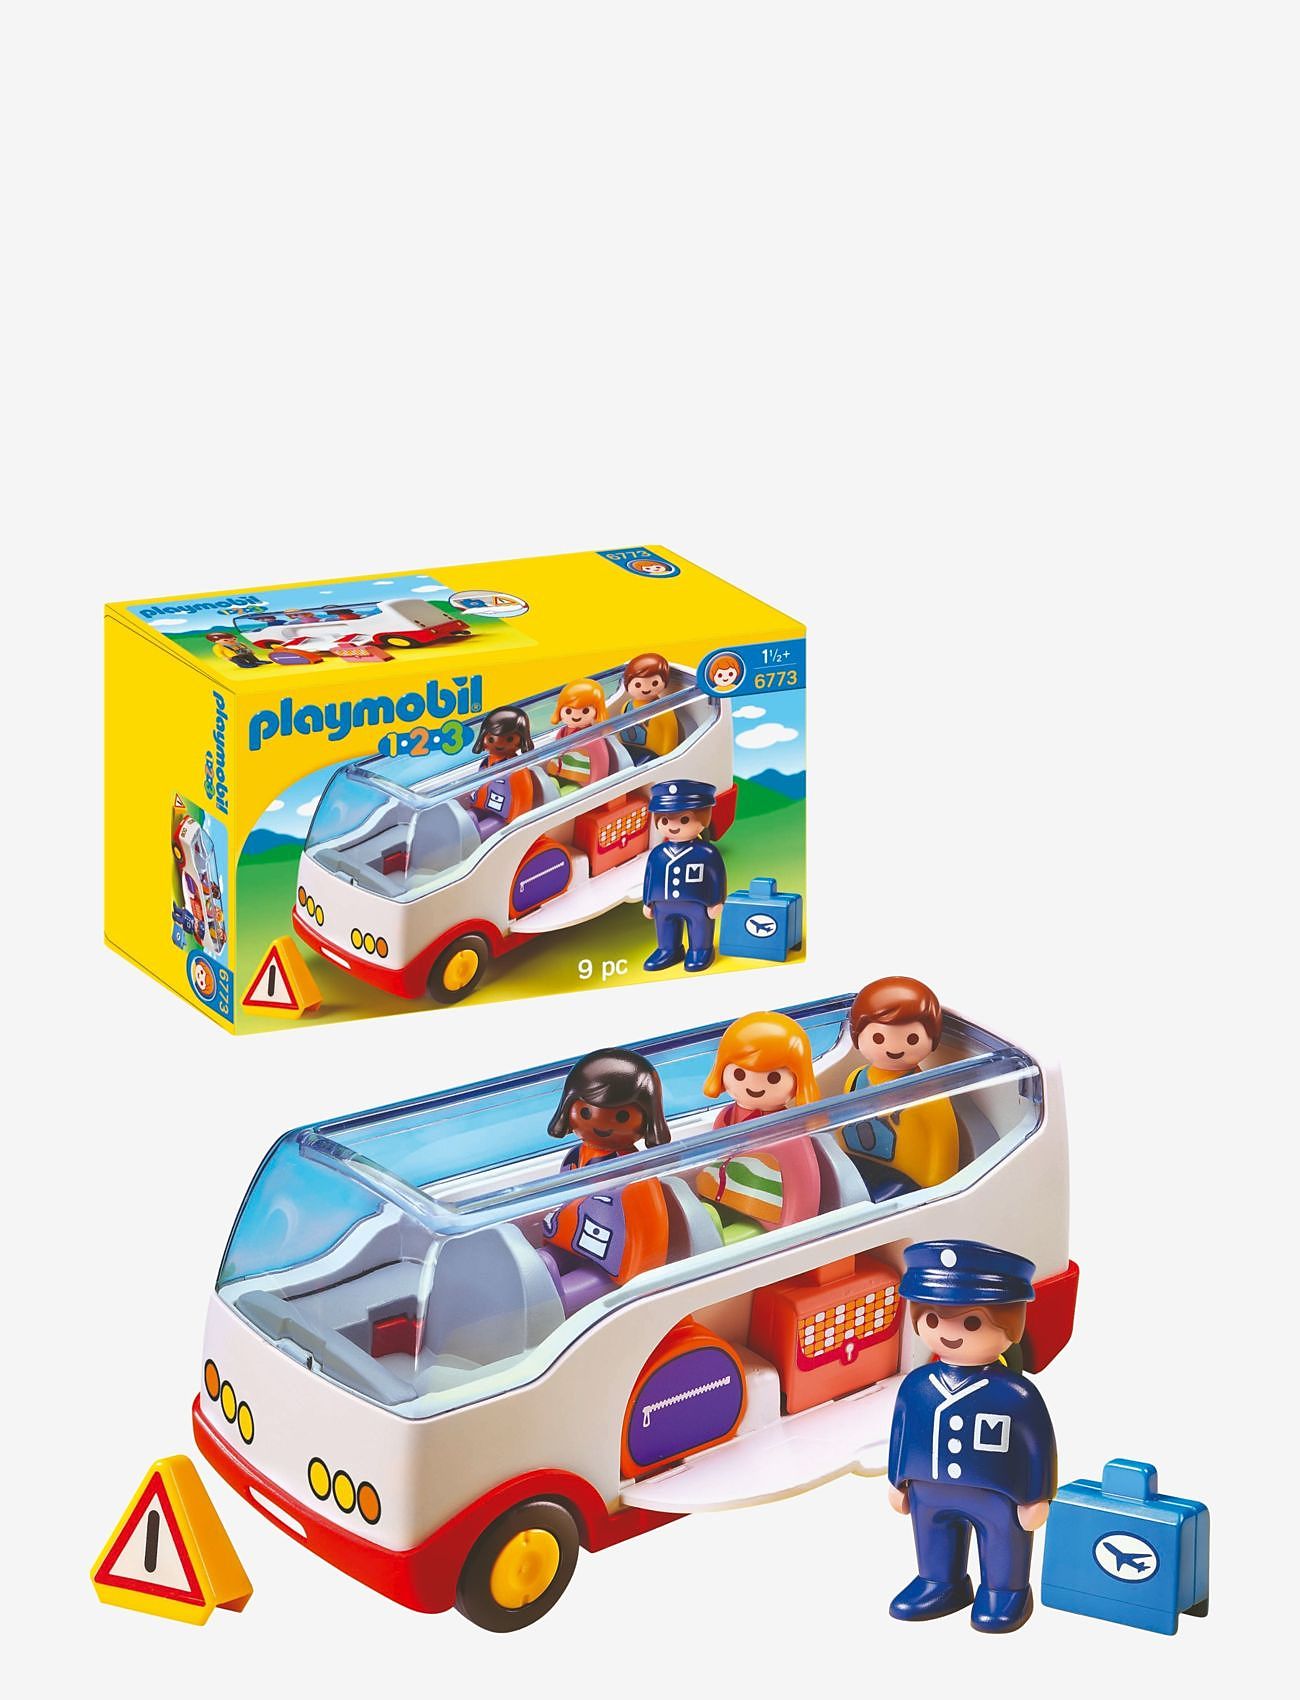 PLAYMOBIL - PLAYMOBIL 1.2.3 Autobus - 6773 - playmobil 1.2.3 - multicolored - 0